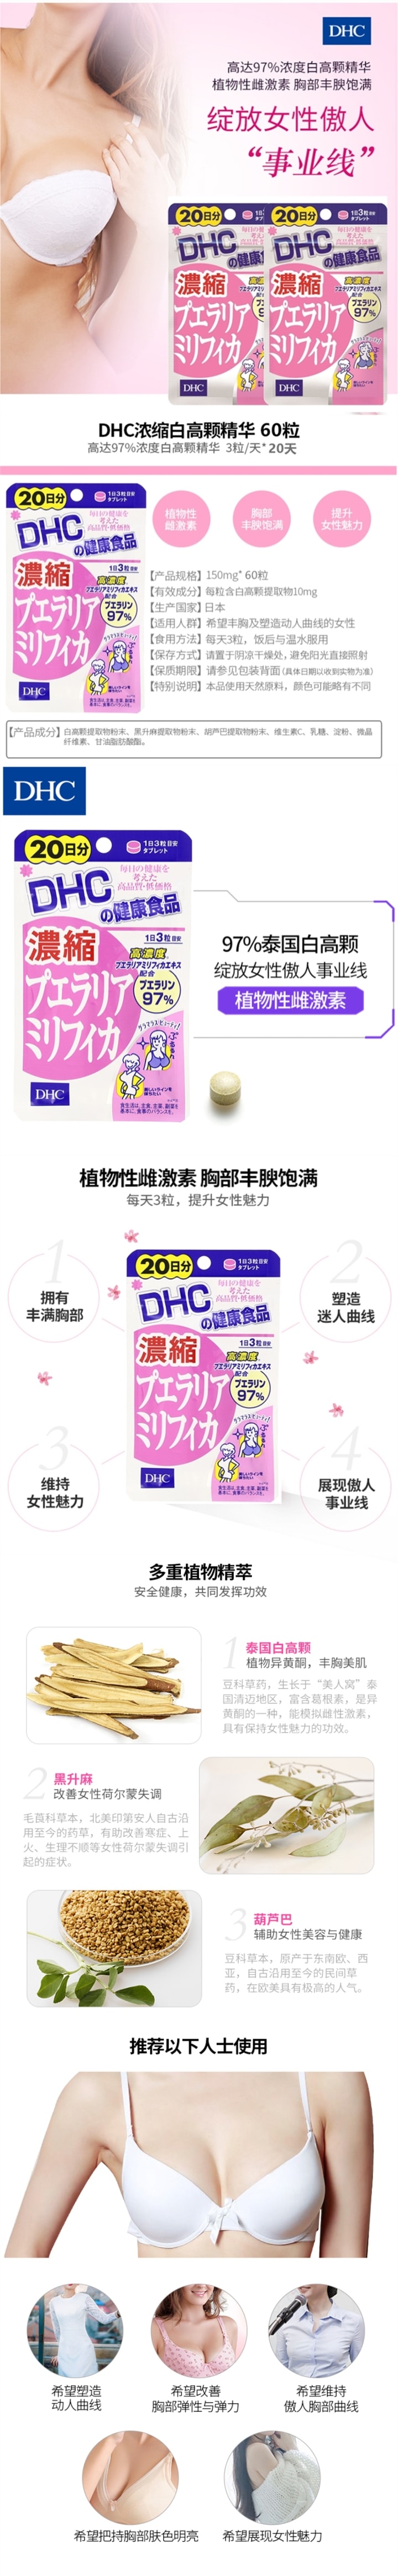 【日本直邮】日本DHC 浓缩泰国白高颗美胸丰胸片20日量 野葛根异黄酮